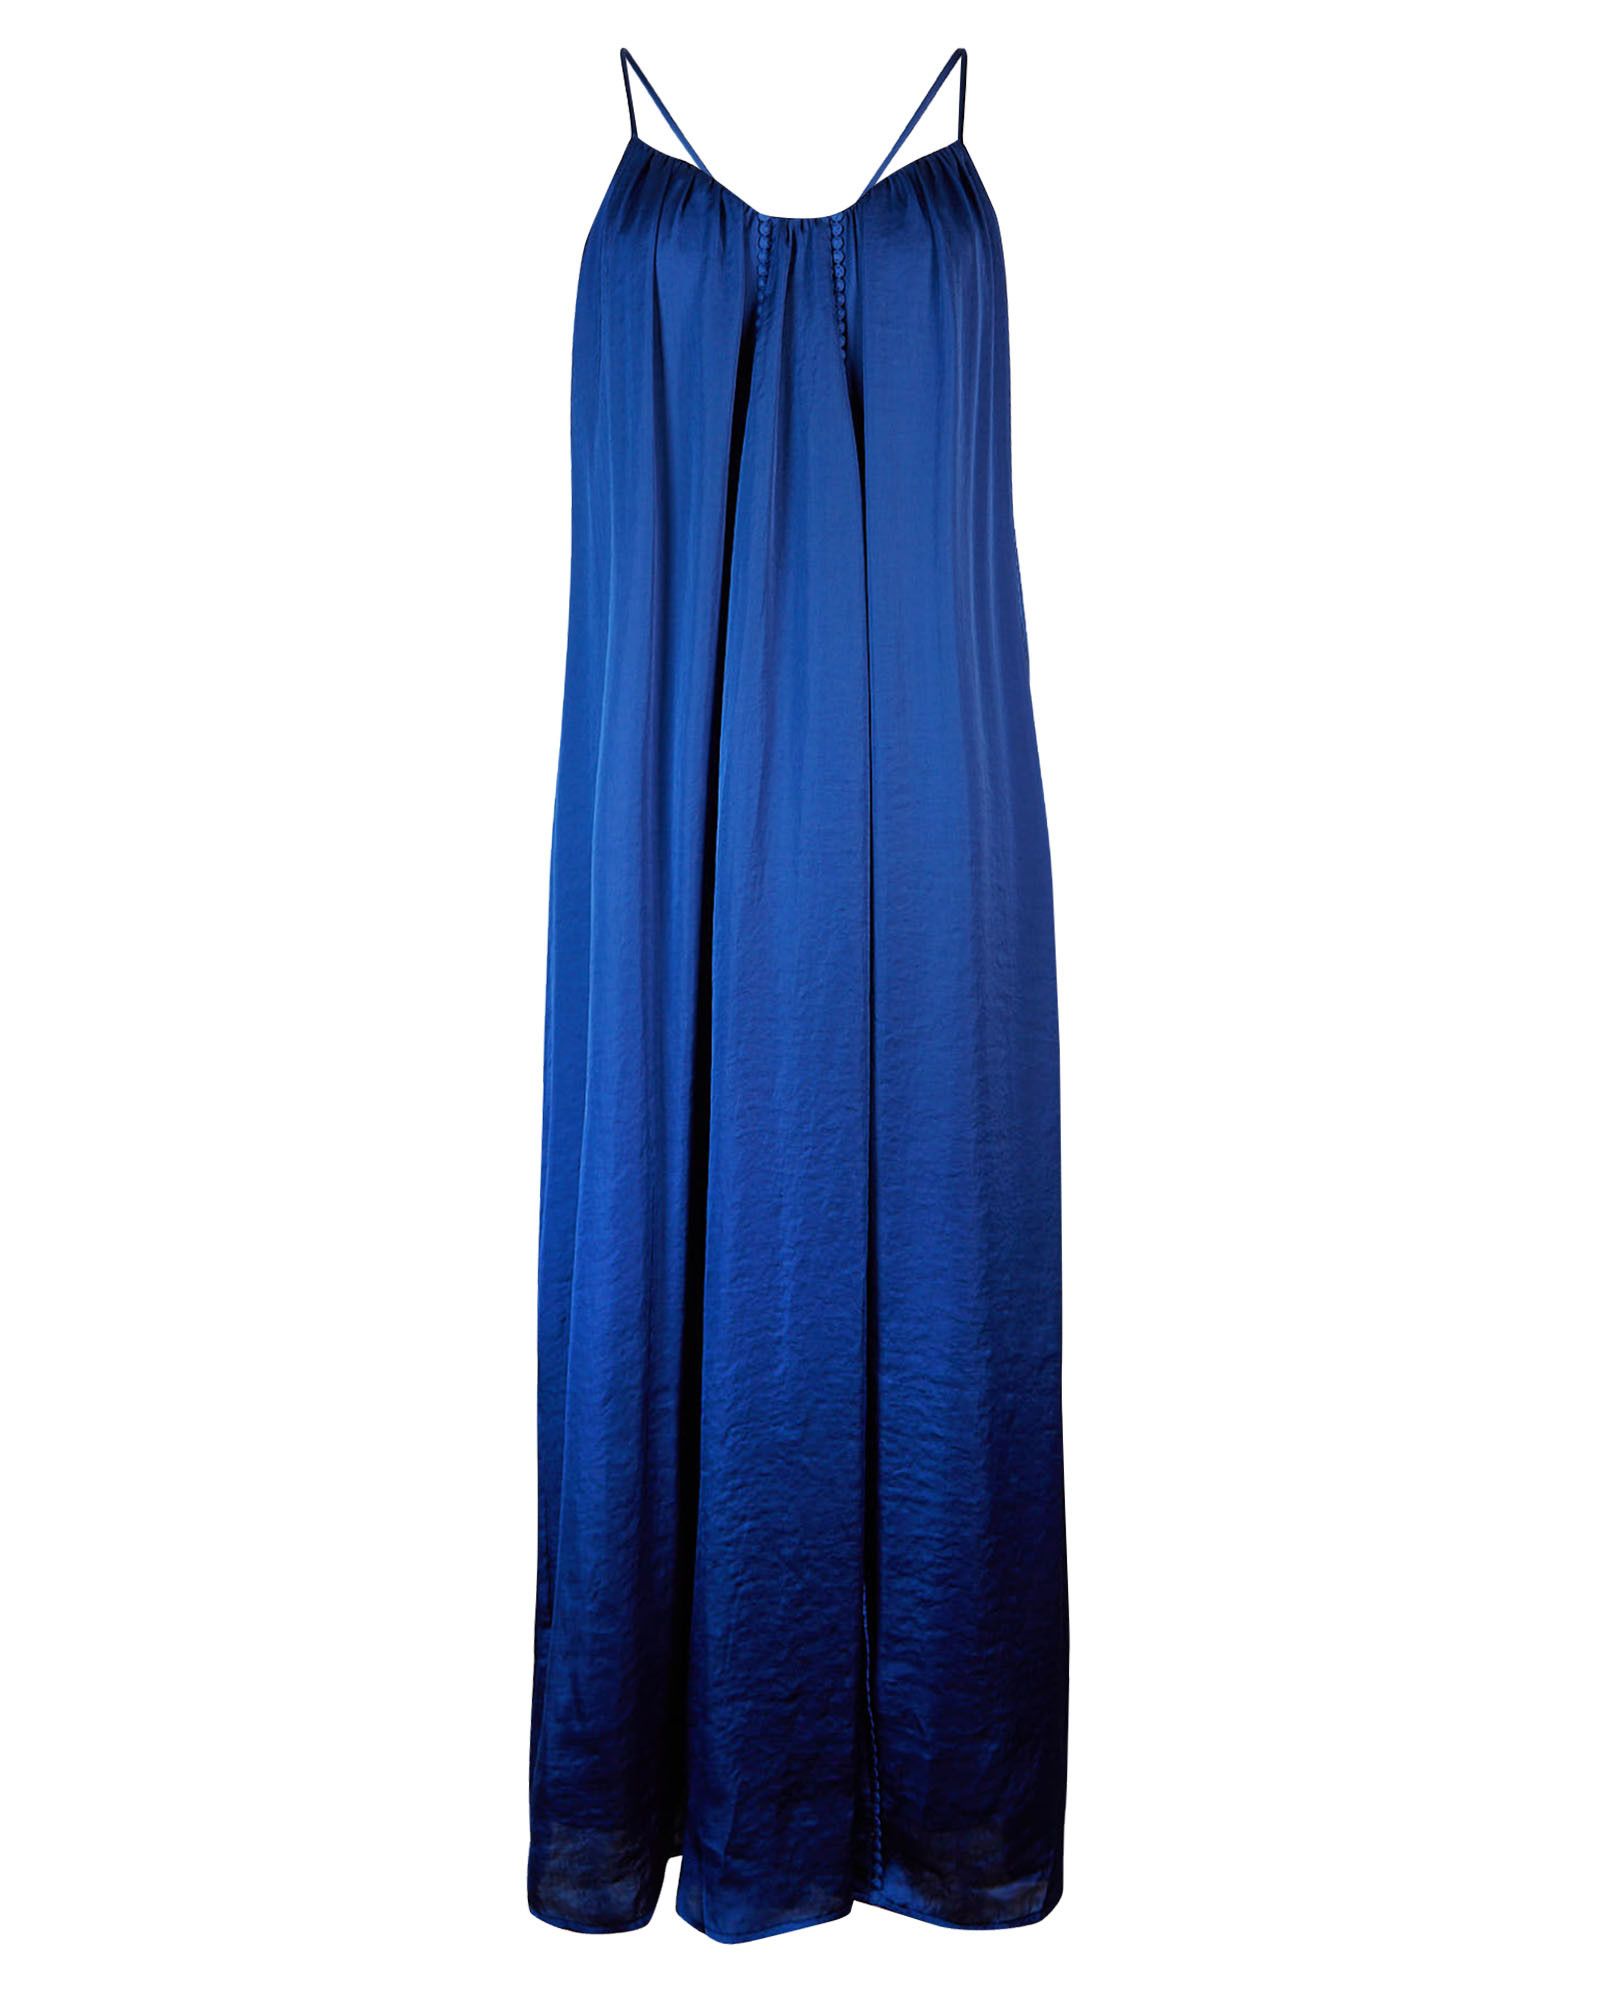 cobalt blue maxi dress